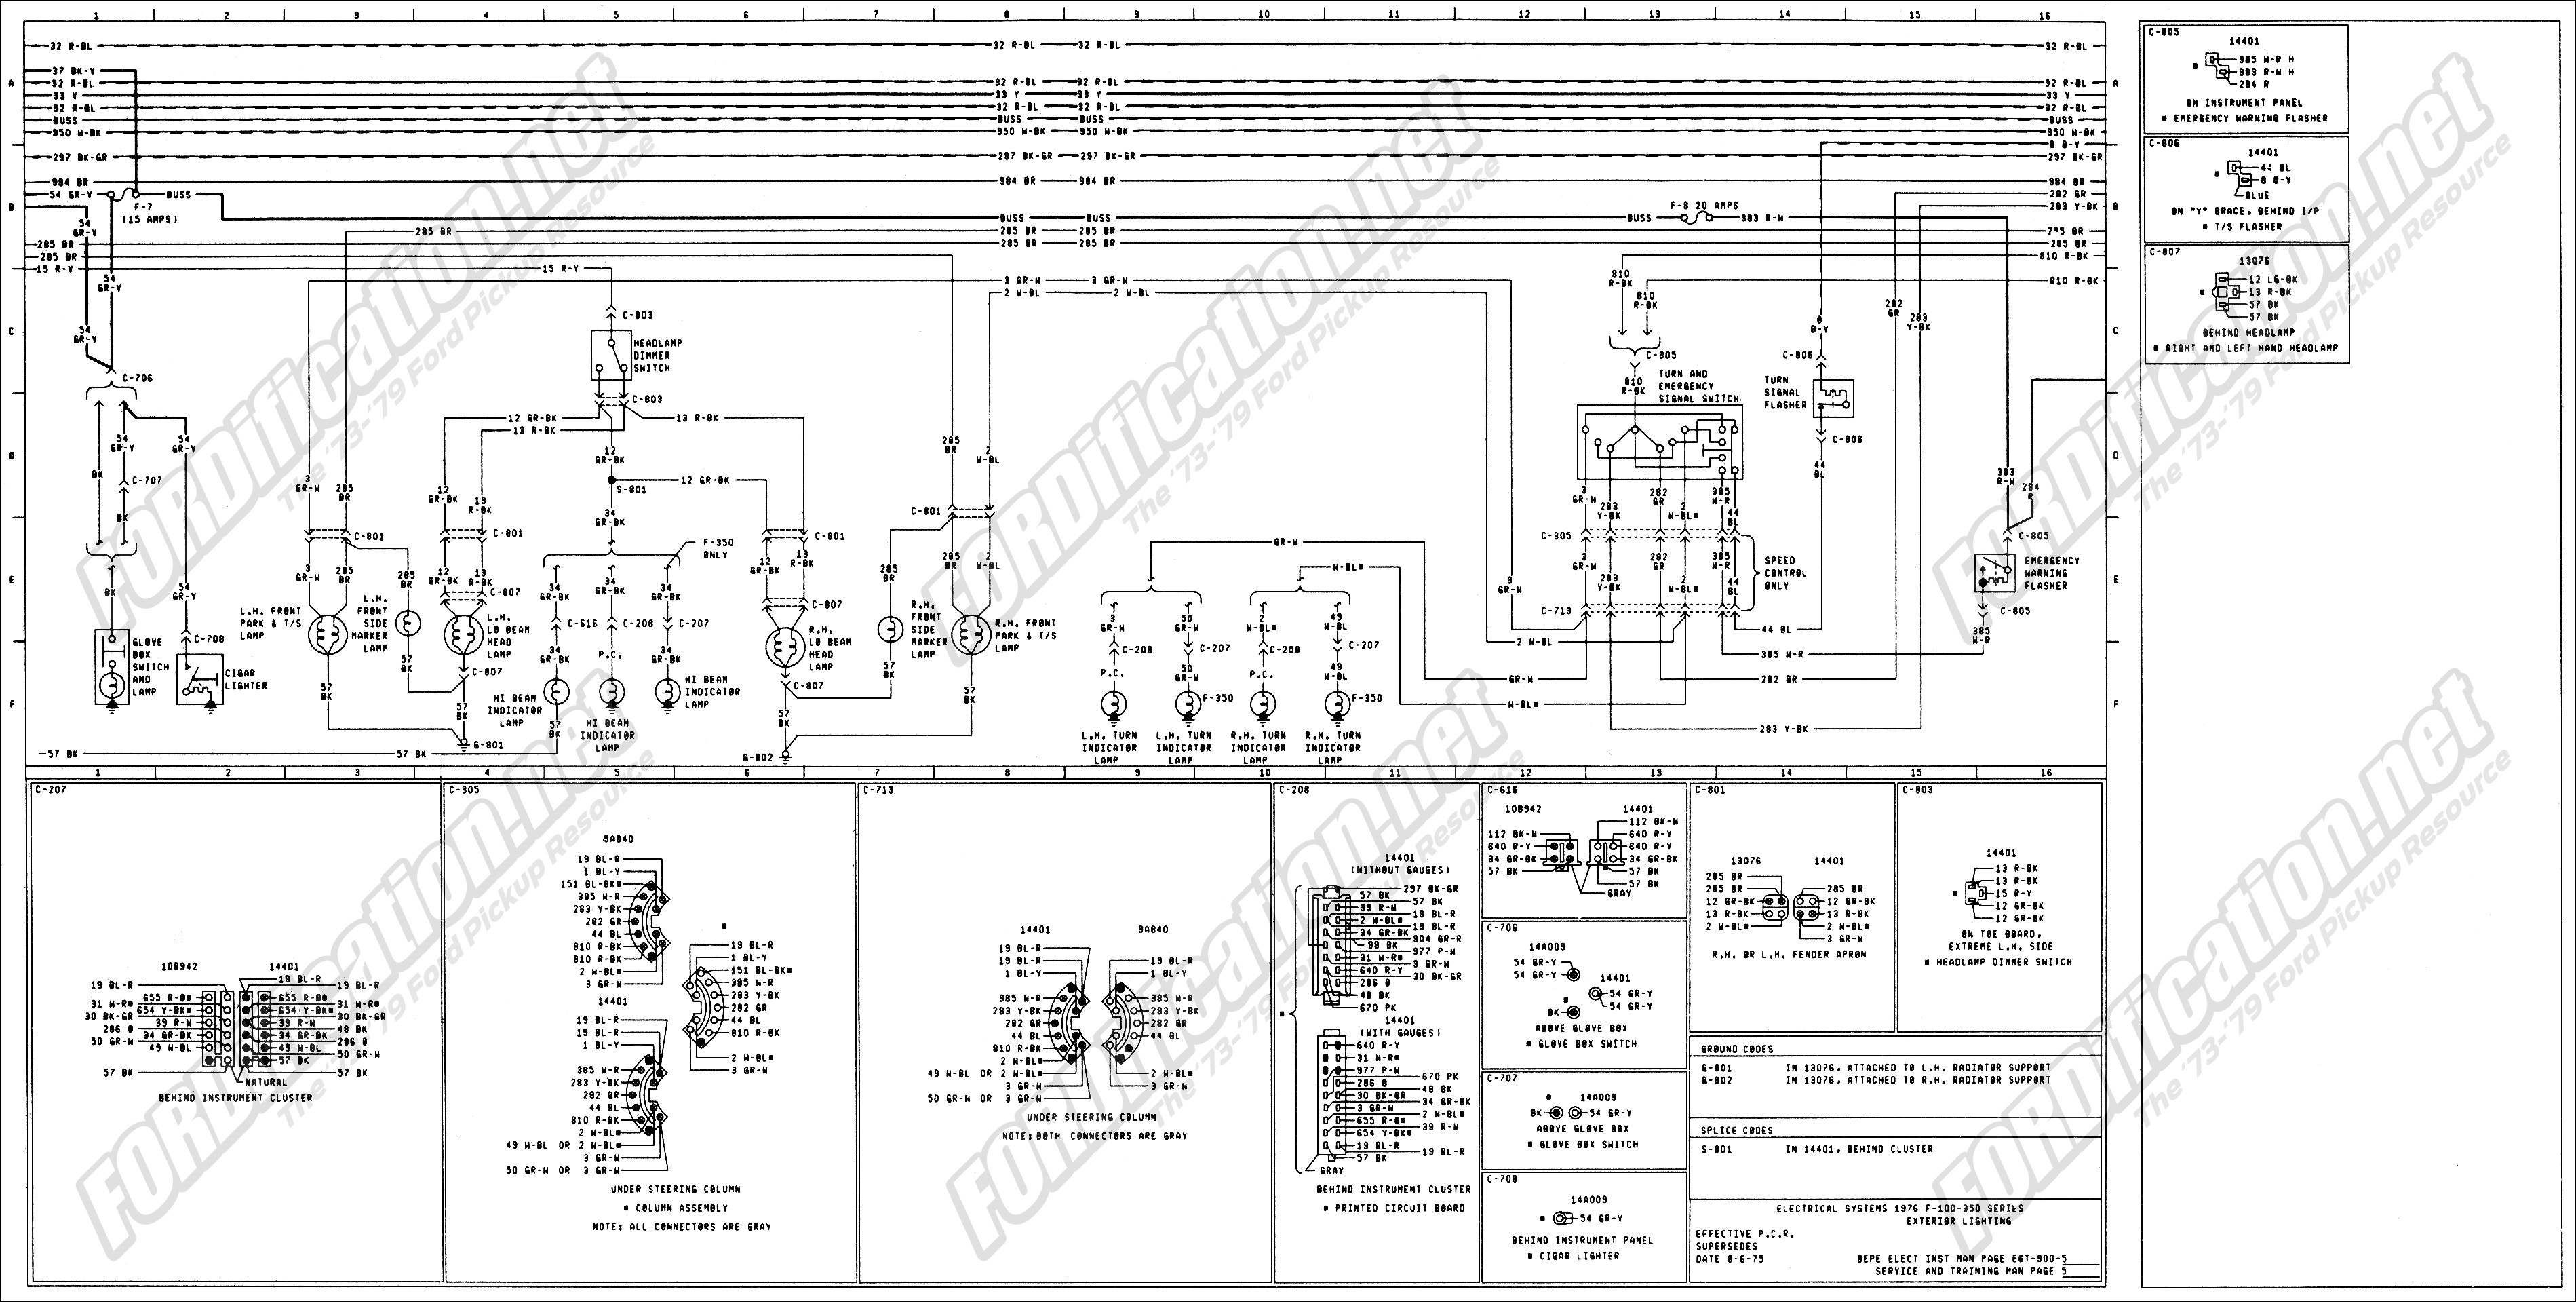 Ford F250 Trailer Wiring Diagram 77 ford F250 Wiring Diagram Wiring Info • Of Ford F250 Trailer Wiring Diagram